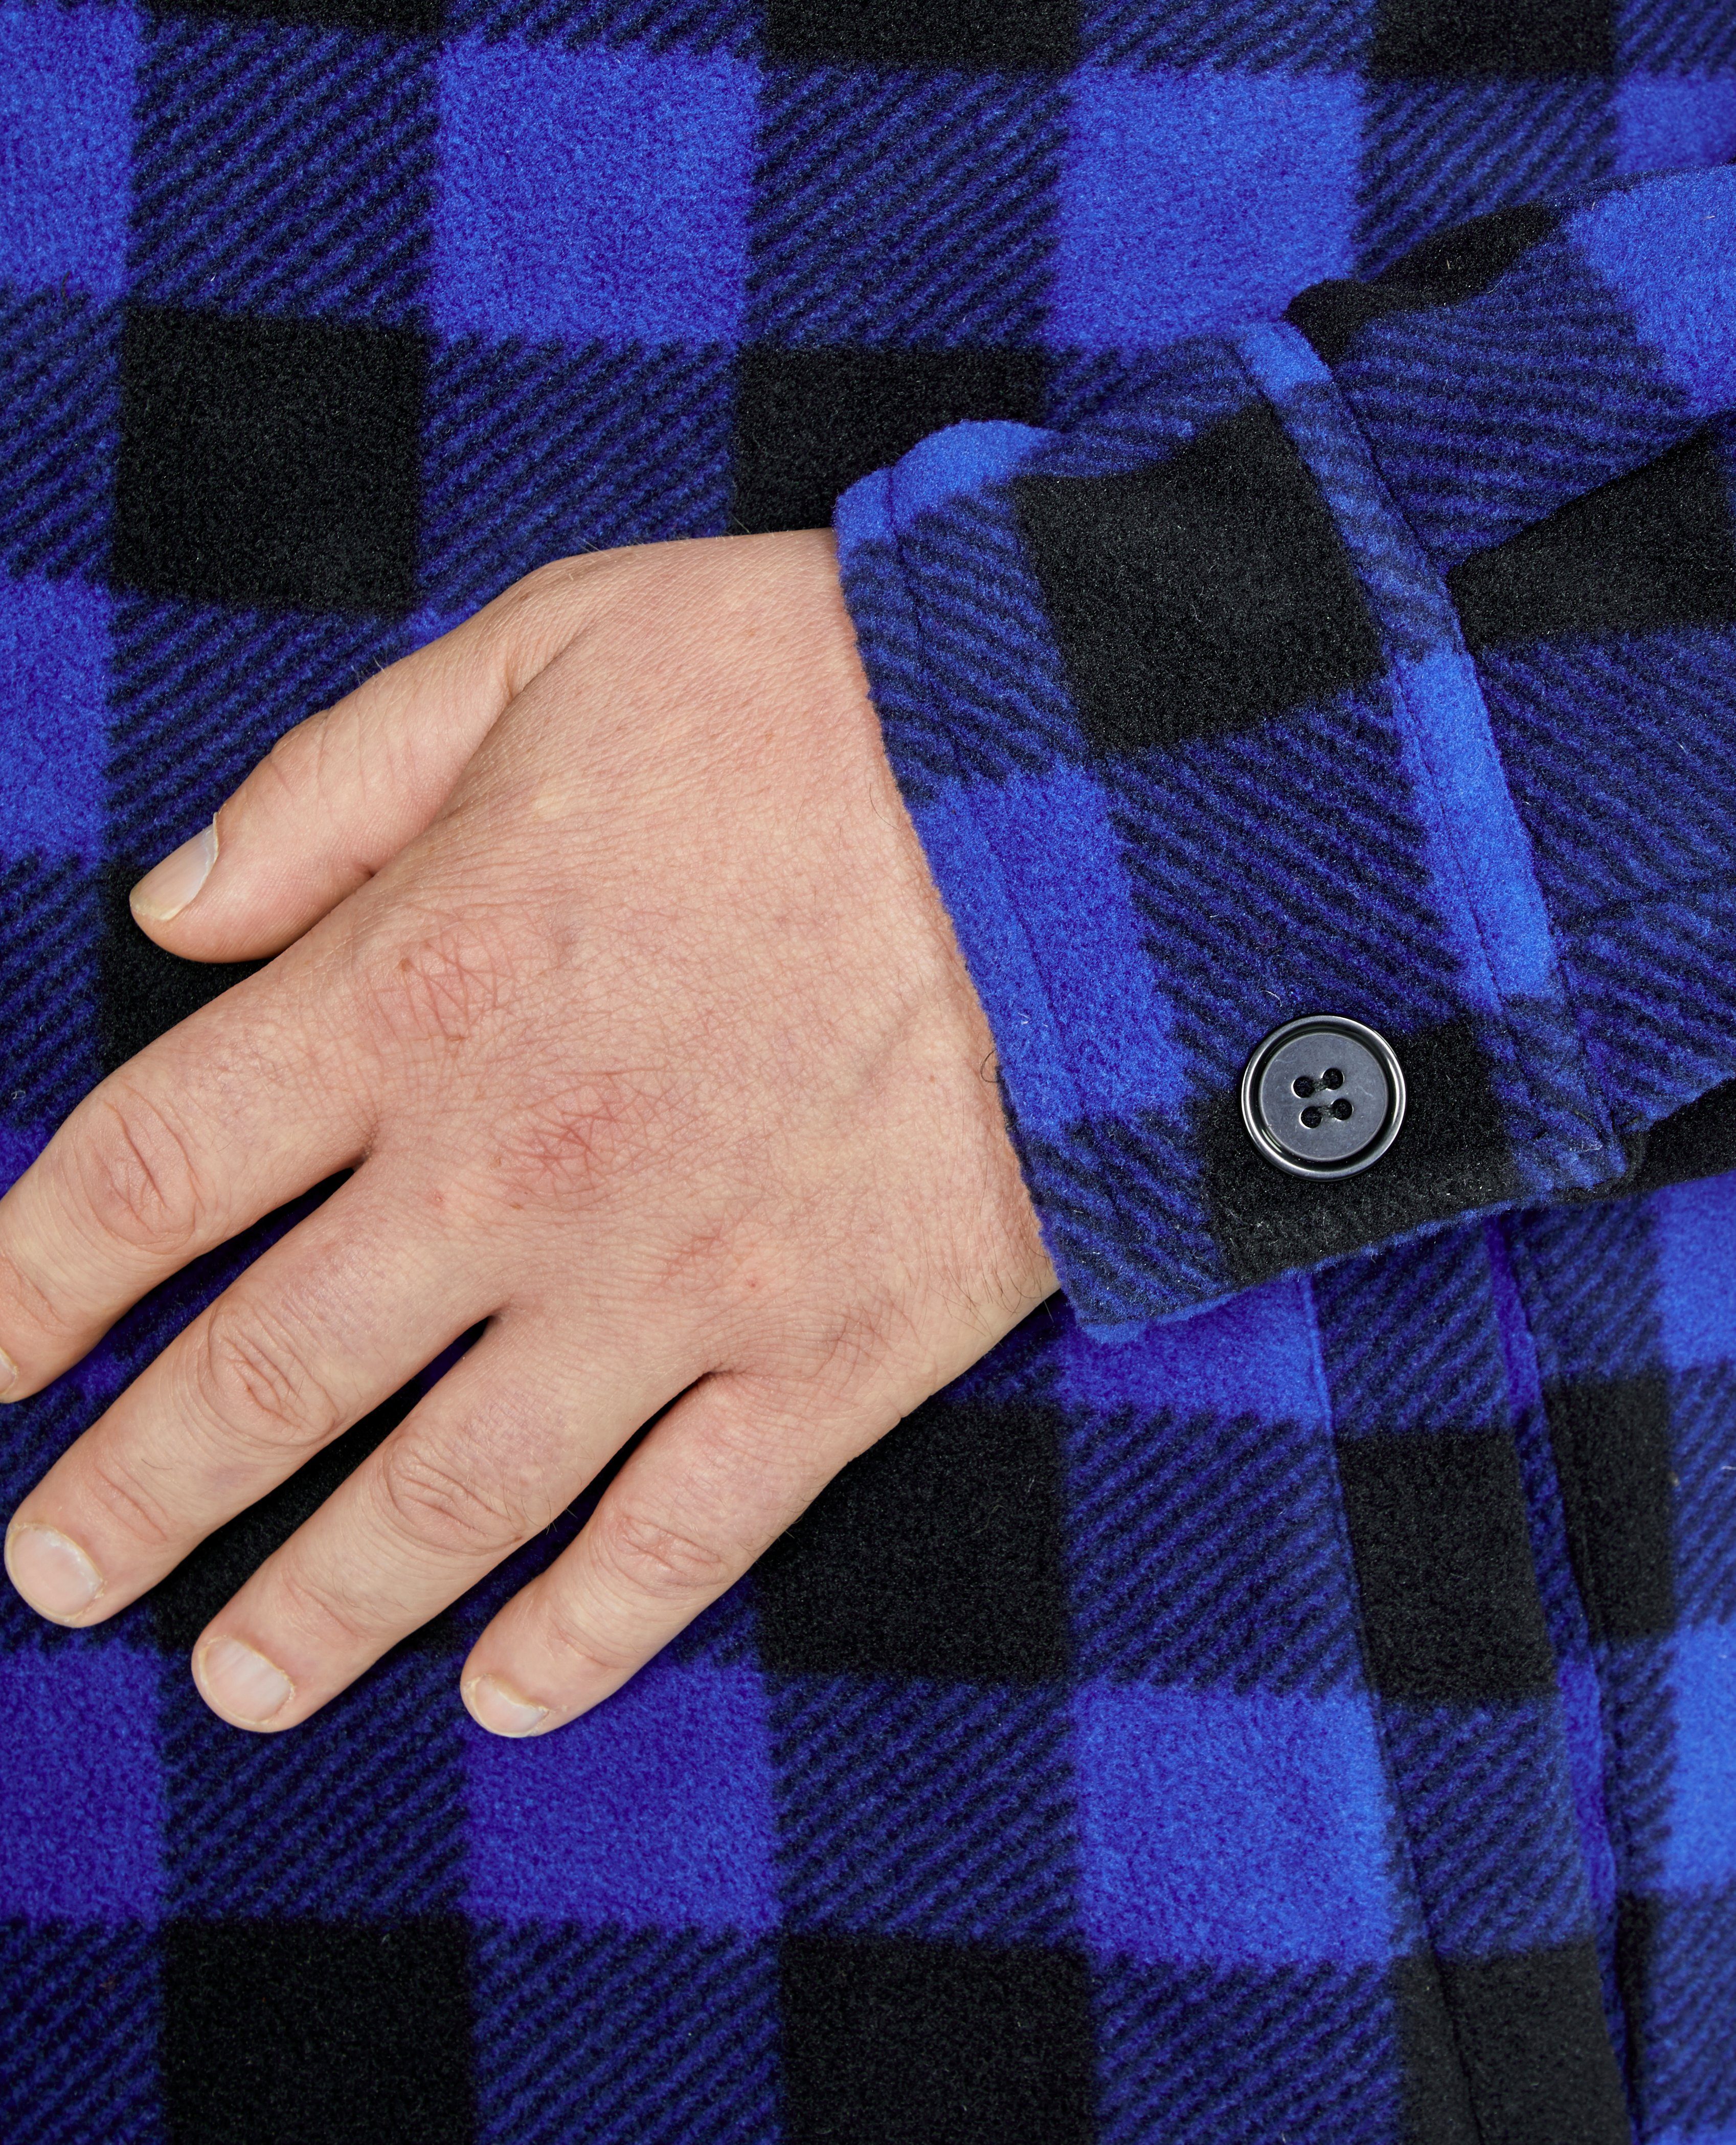 Northern Country Flanellhemd (als Flanellstoff Taschen, offen Jacke Rücken, blau-schwarz zugeknöpft 5 zu mit warm gefüttert, oder verlängertem mit Hemd tragen)